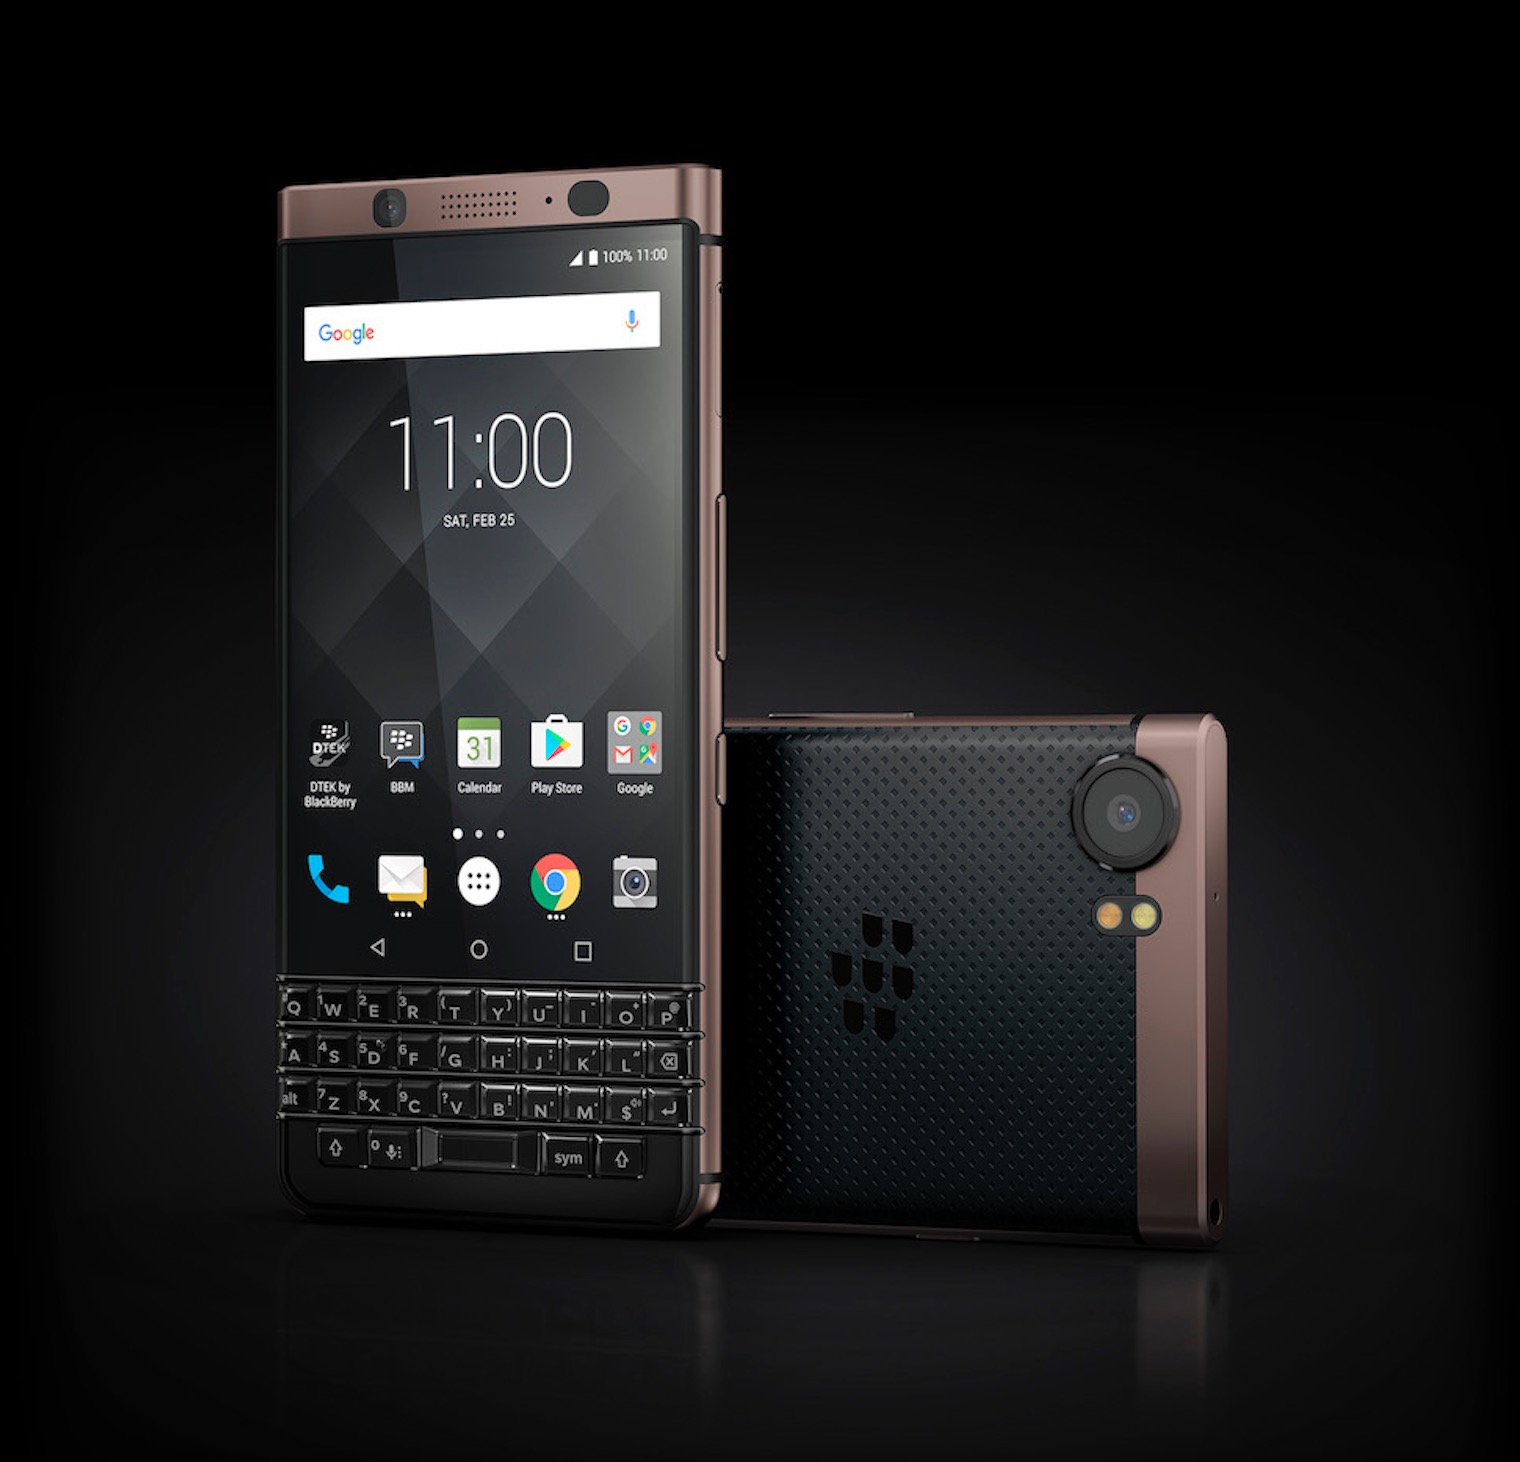 BlackBerry KEYone
Bronze Edition chính thức ra mắt tại Việt Nam, giá
16.490.000 VNĐ